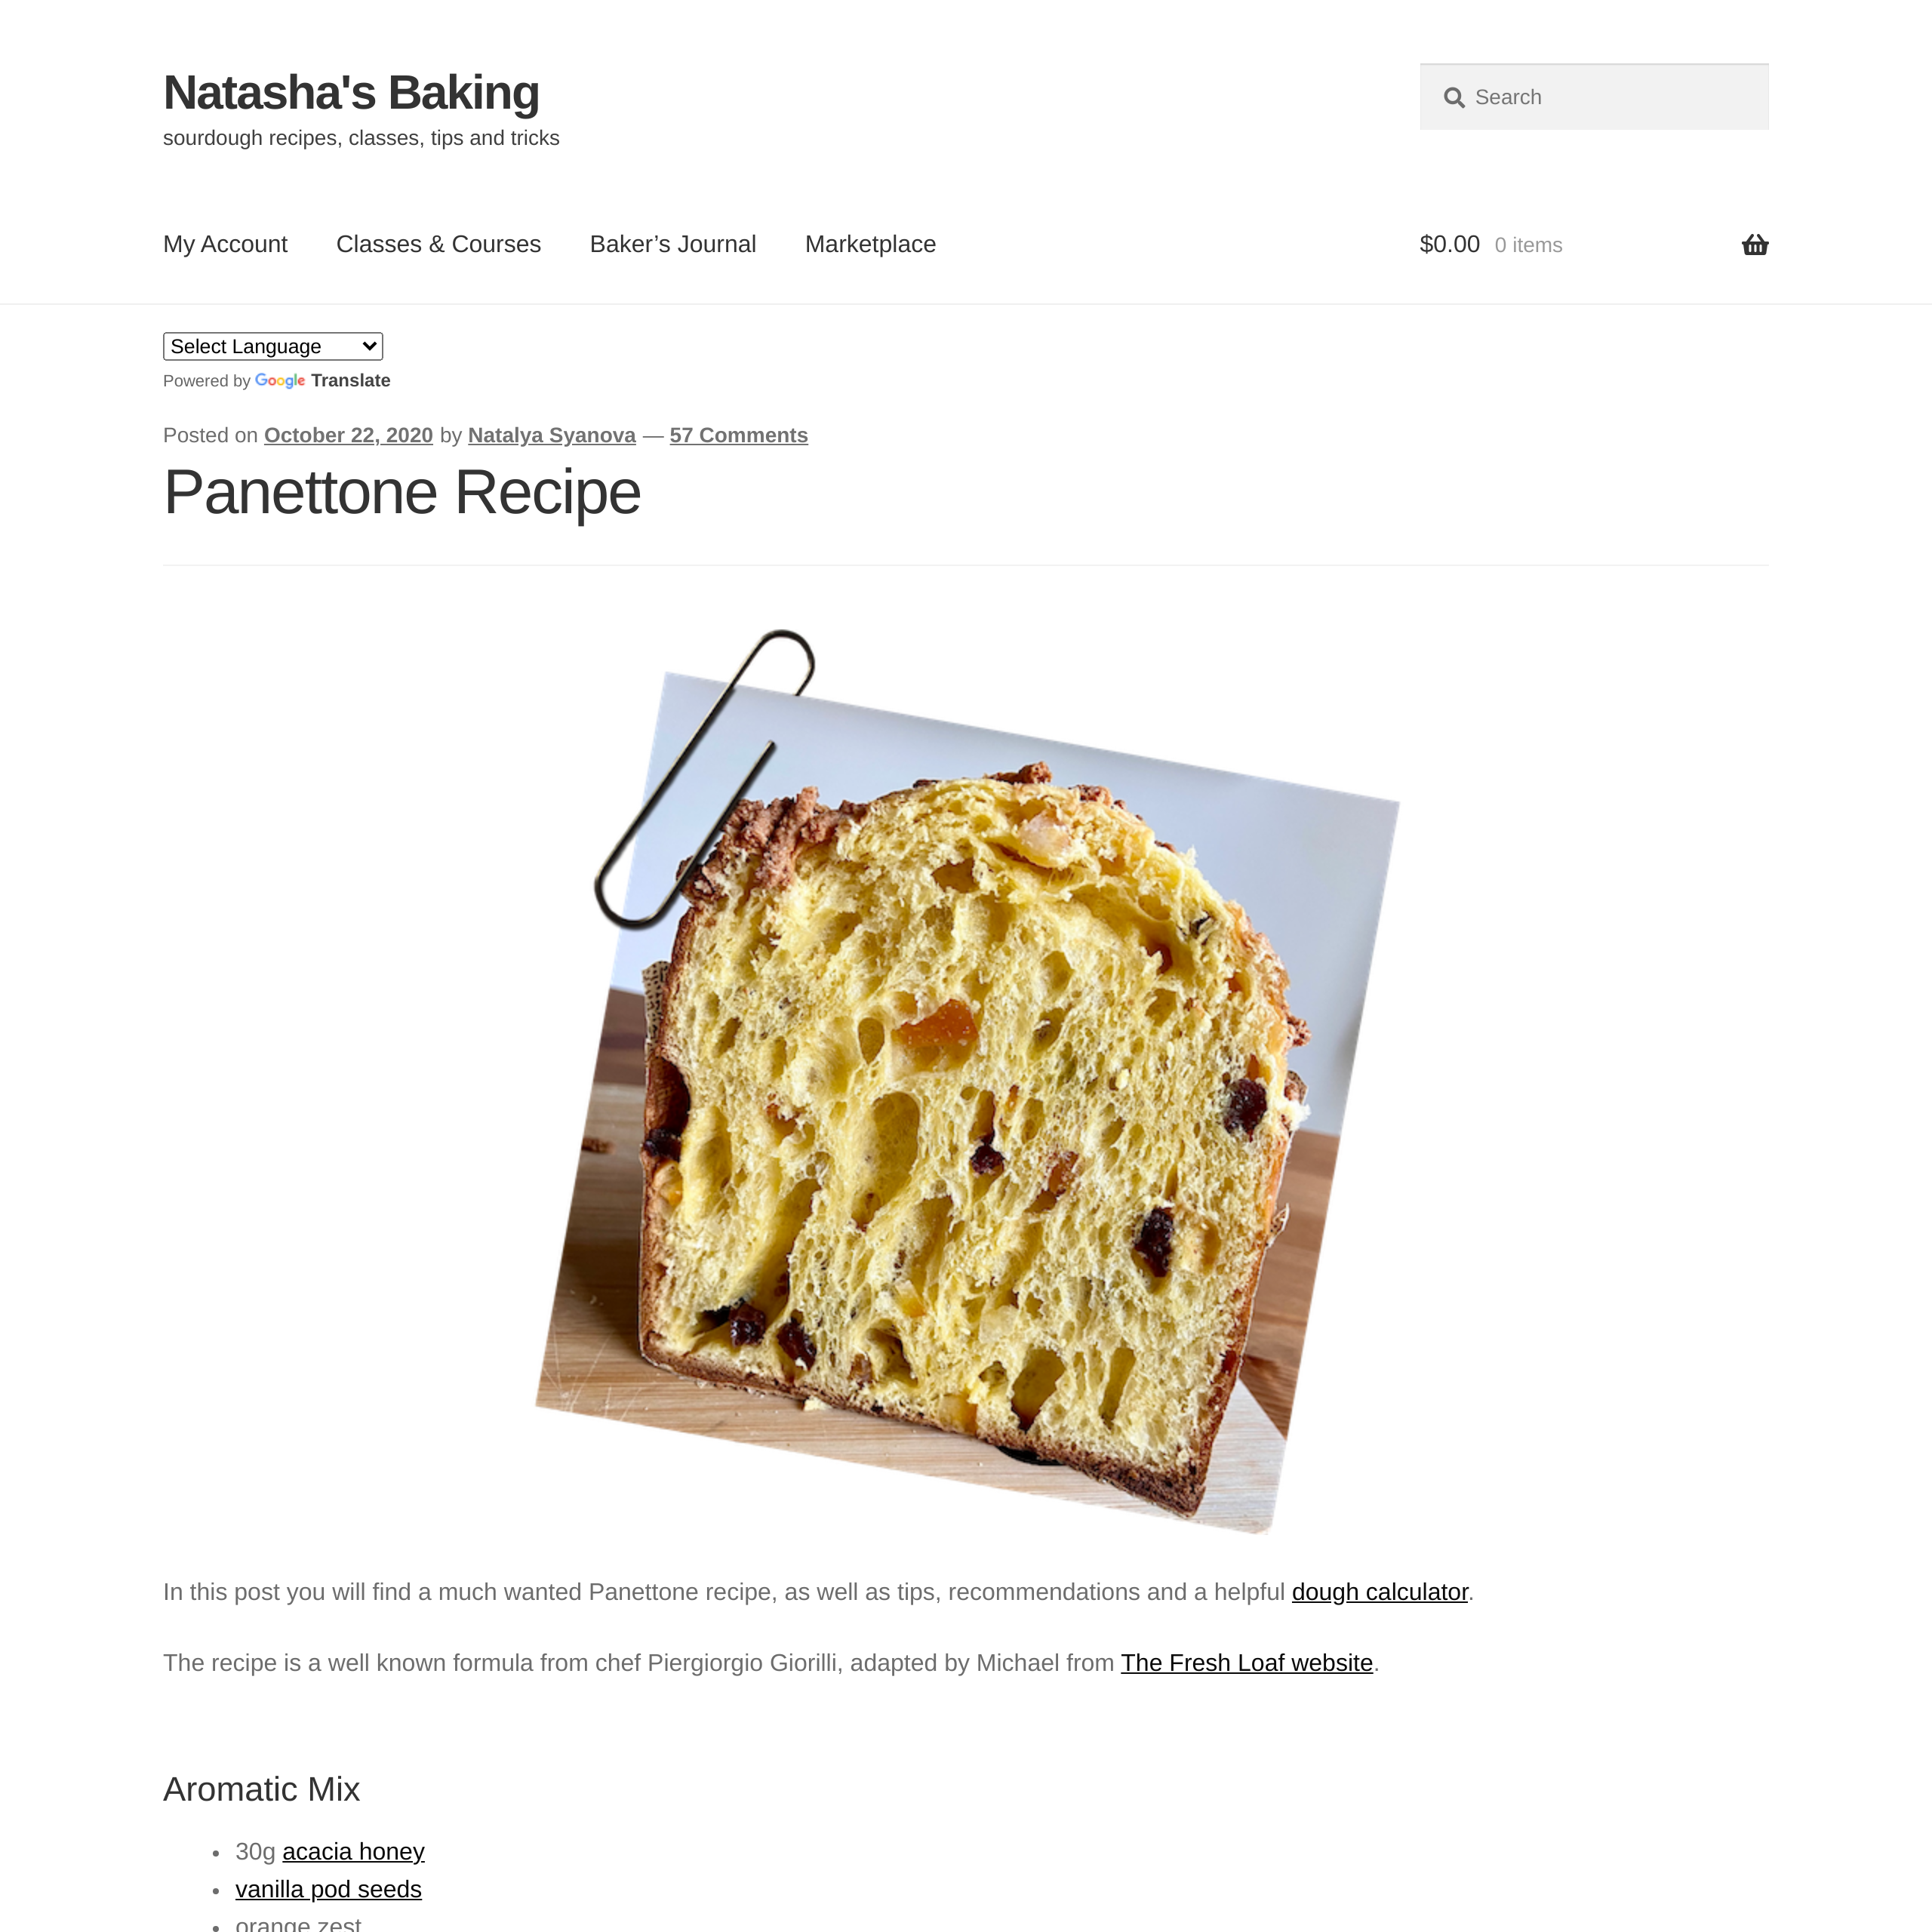 Panettone Recipe - Natasha's Baking